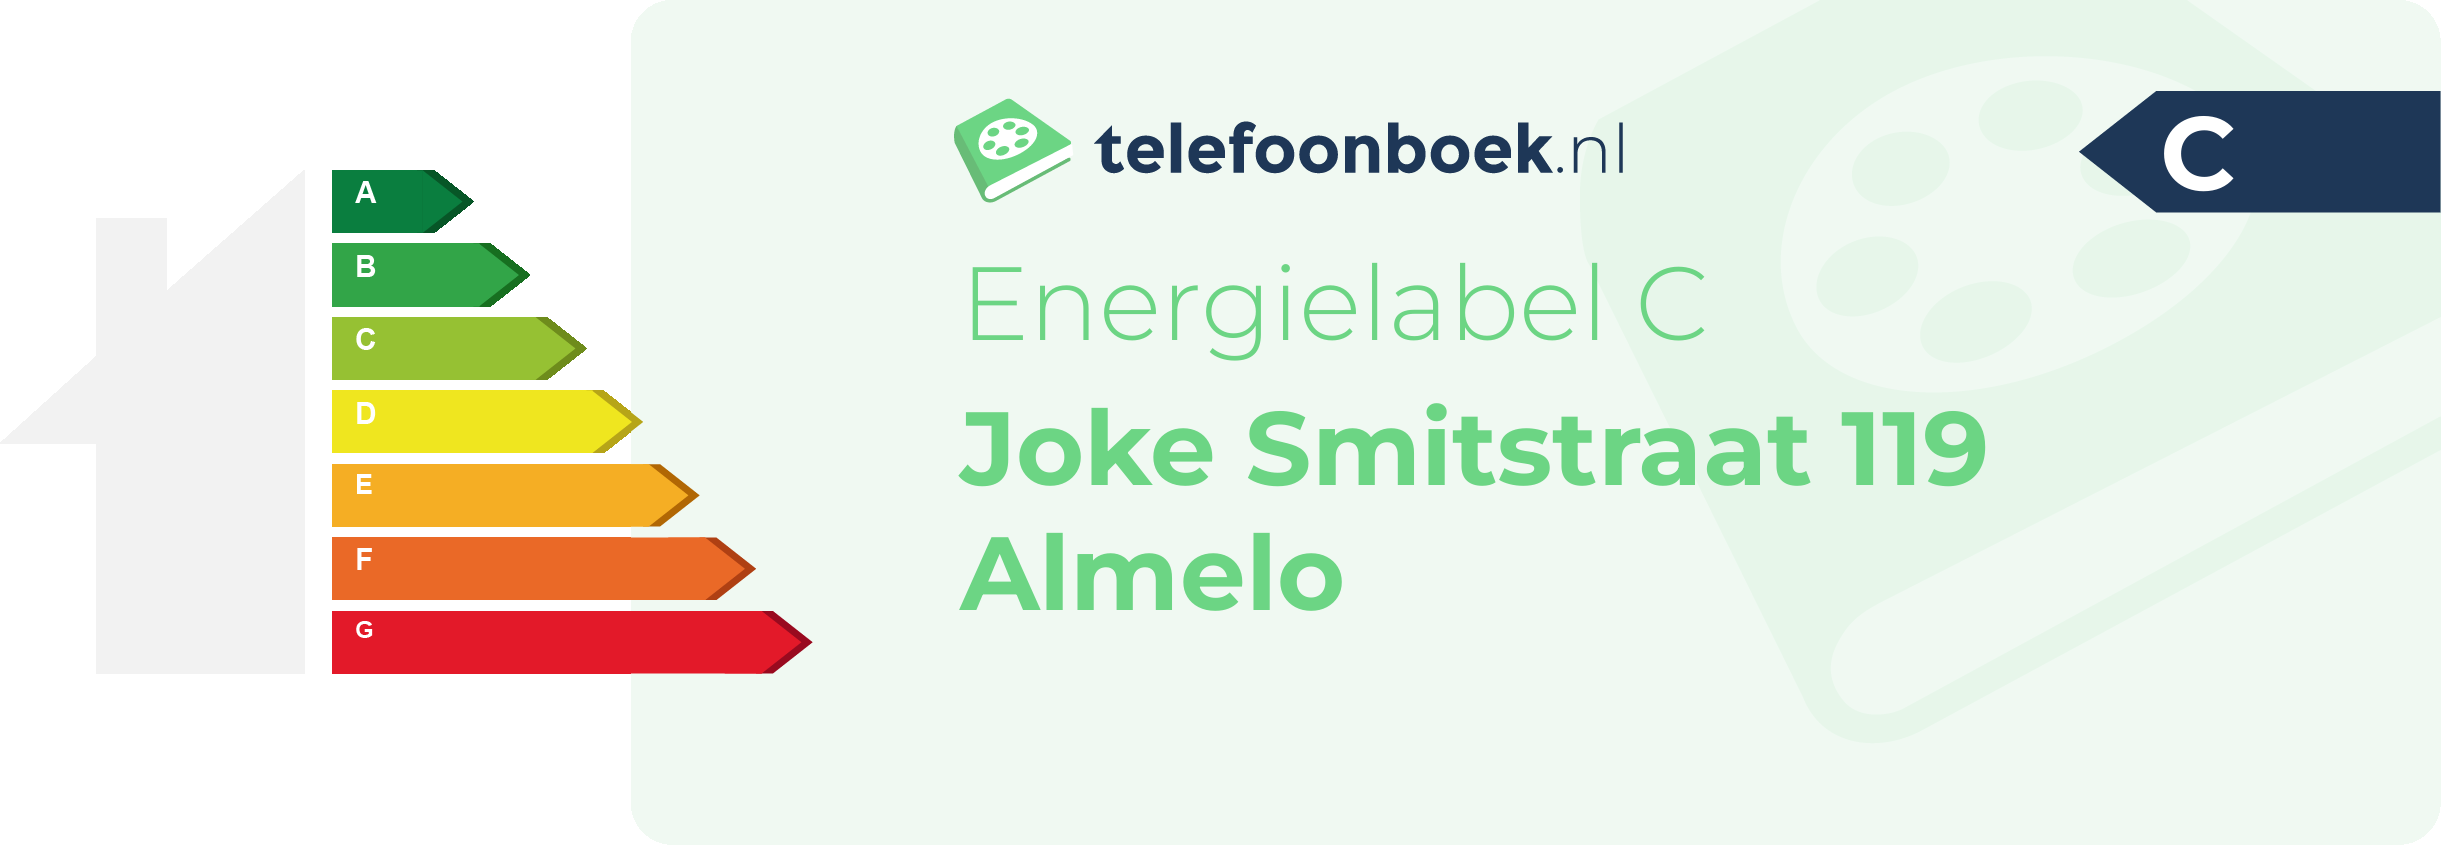 Energielabel Joke Smitstraat 119 Almelo